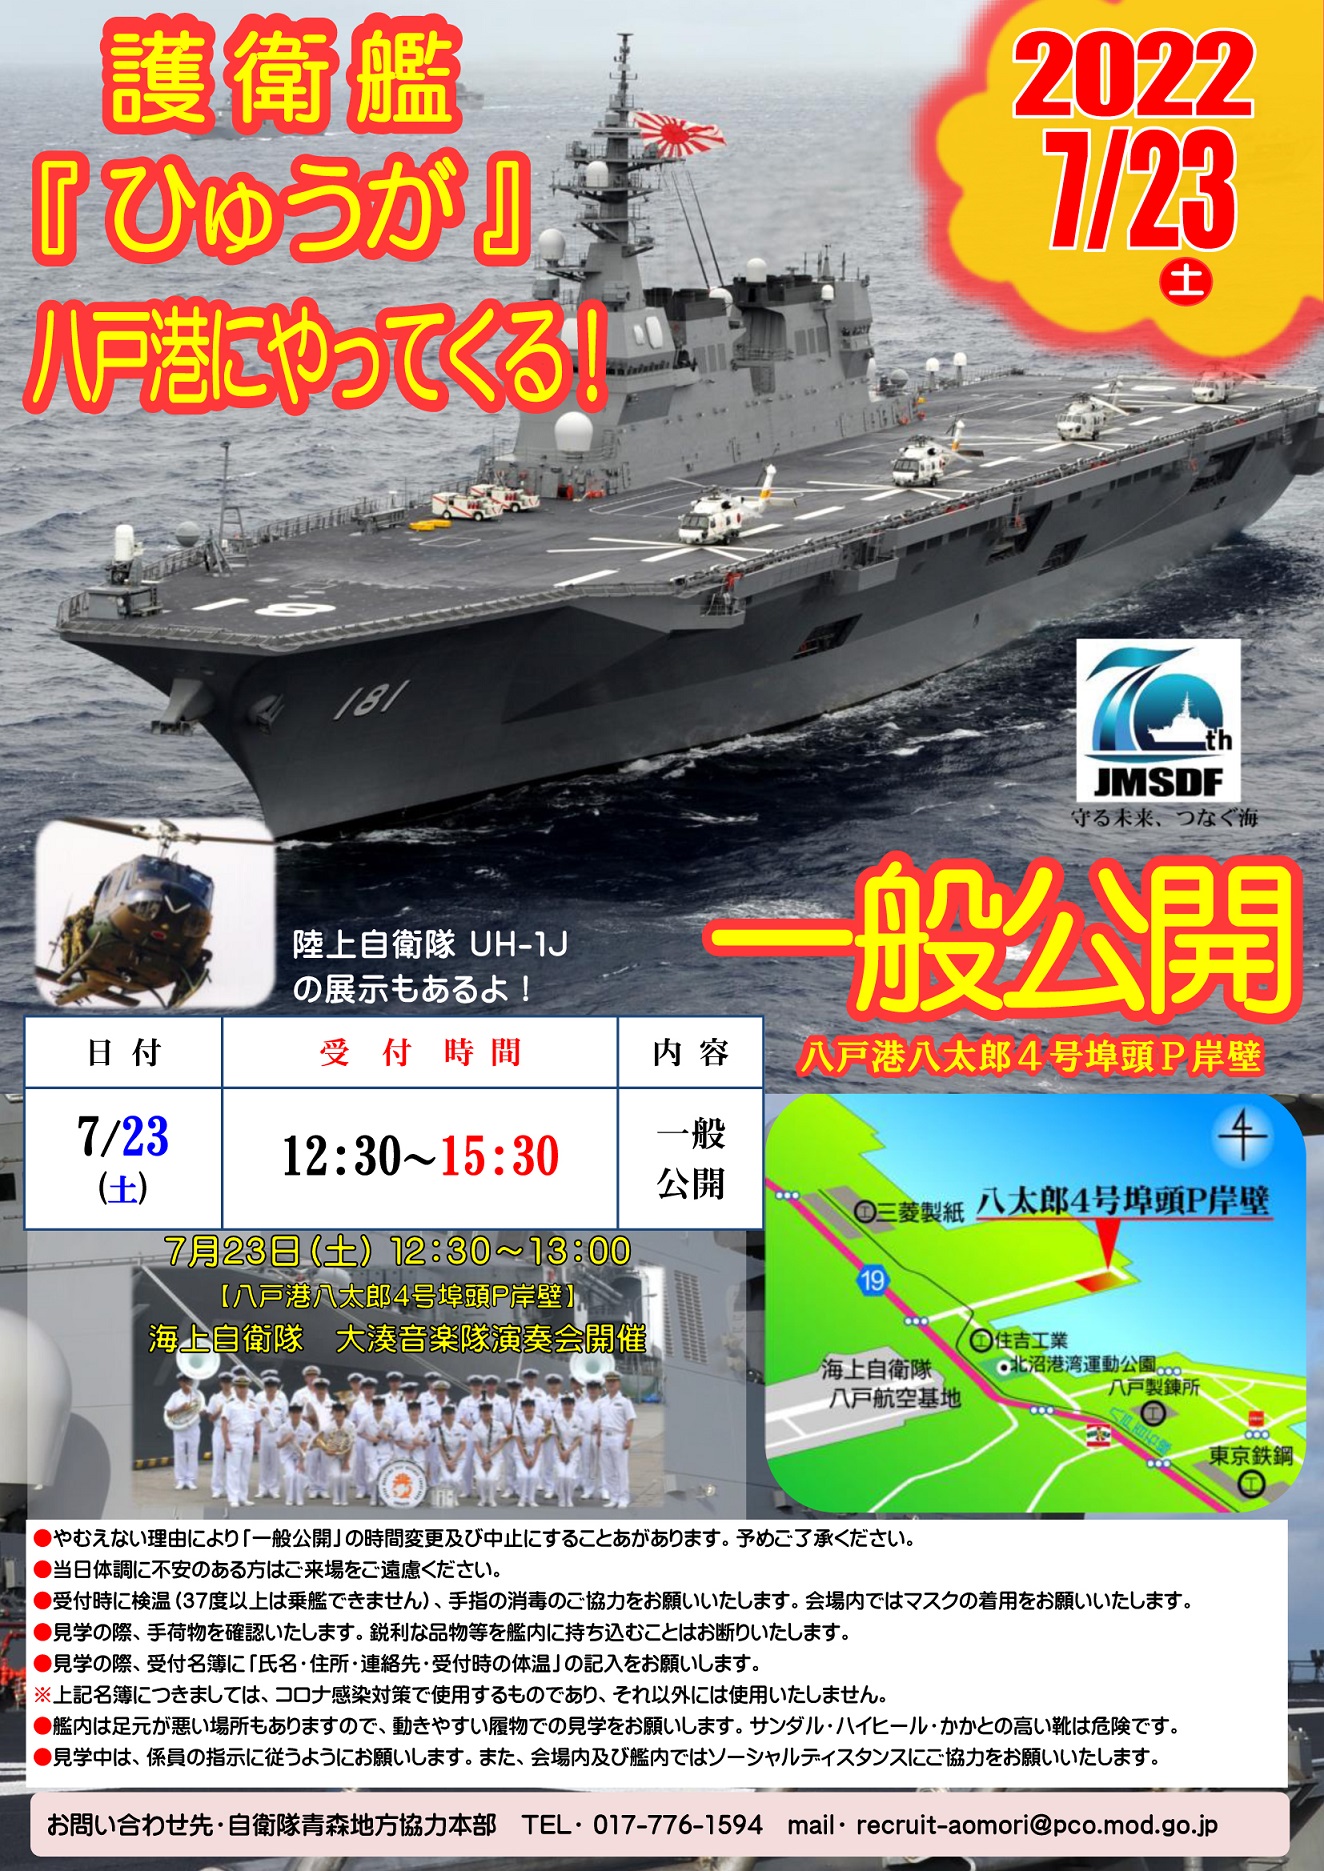 海上自衛隊 護衛艦「ひゅうが」一般公開 in 八戸港ポスター